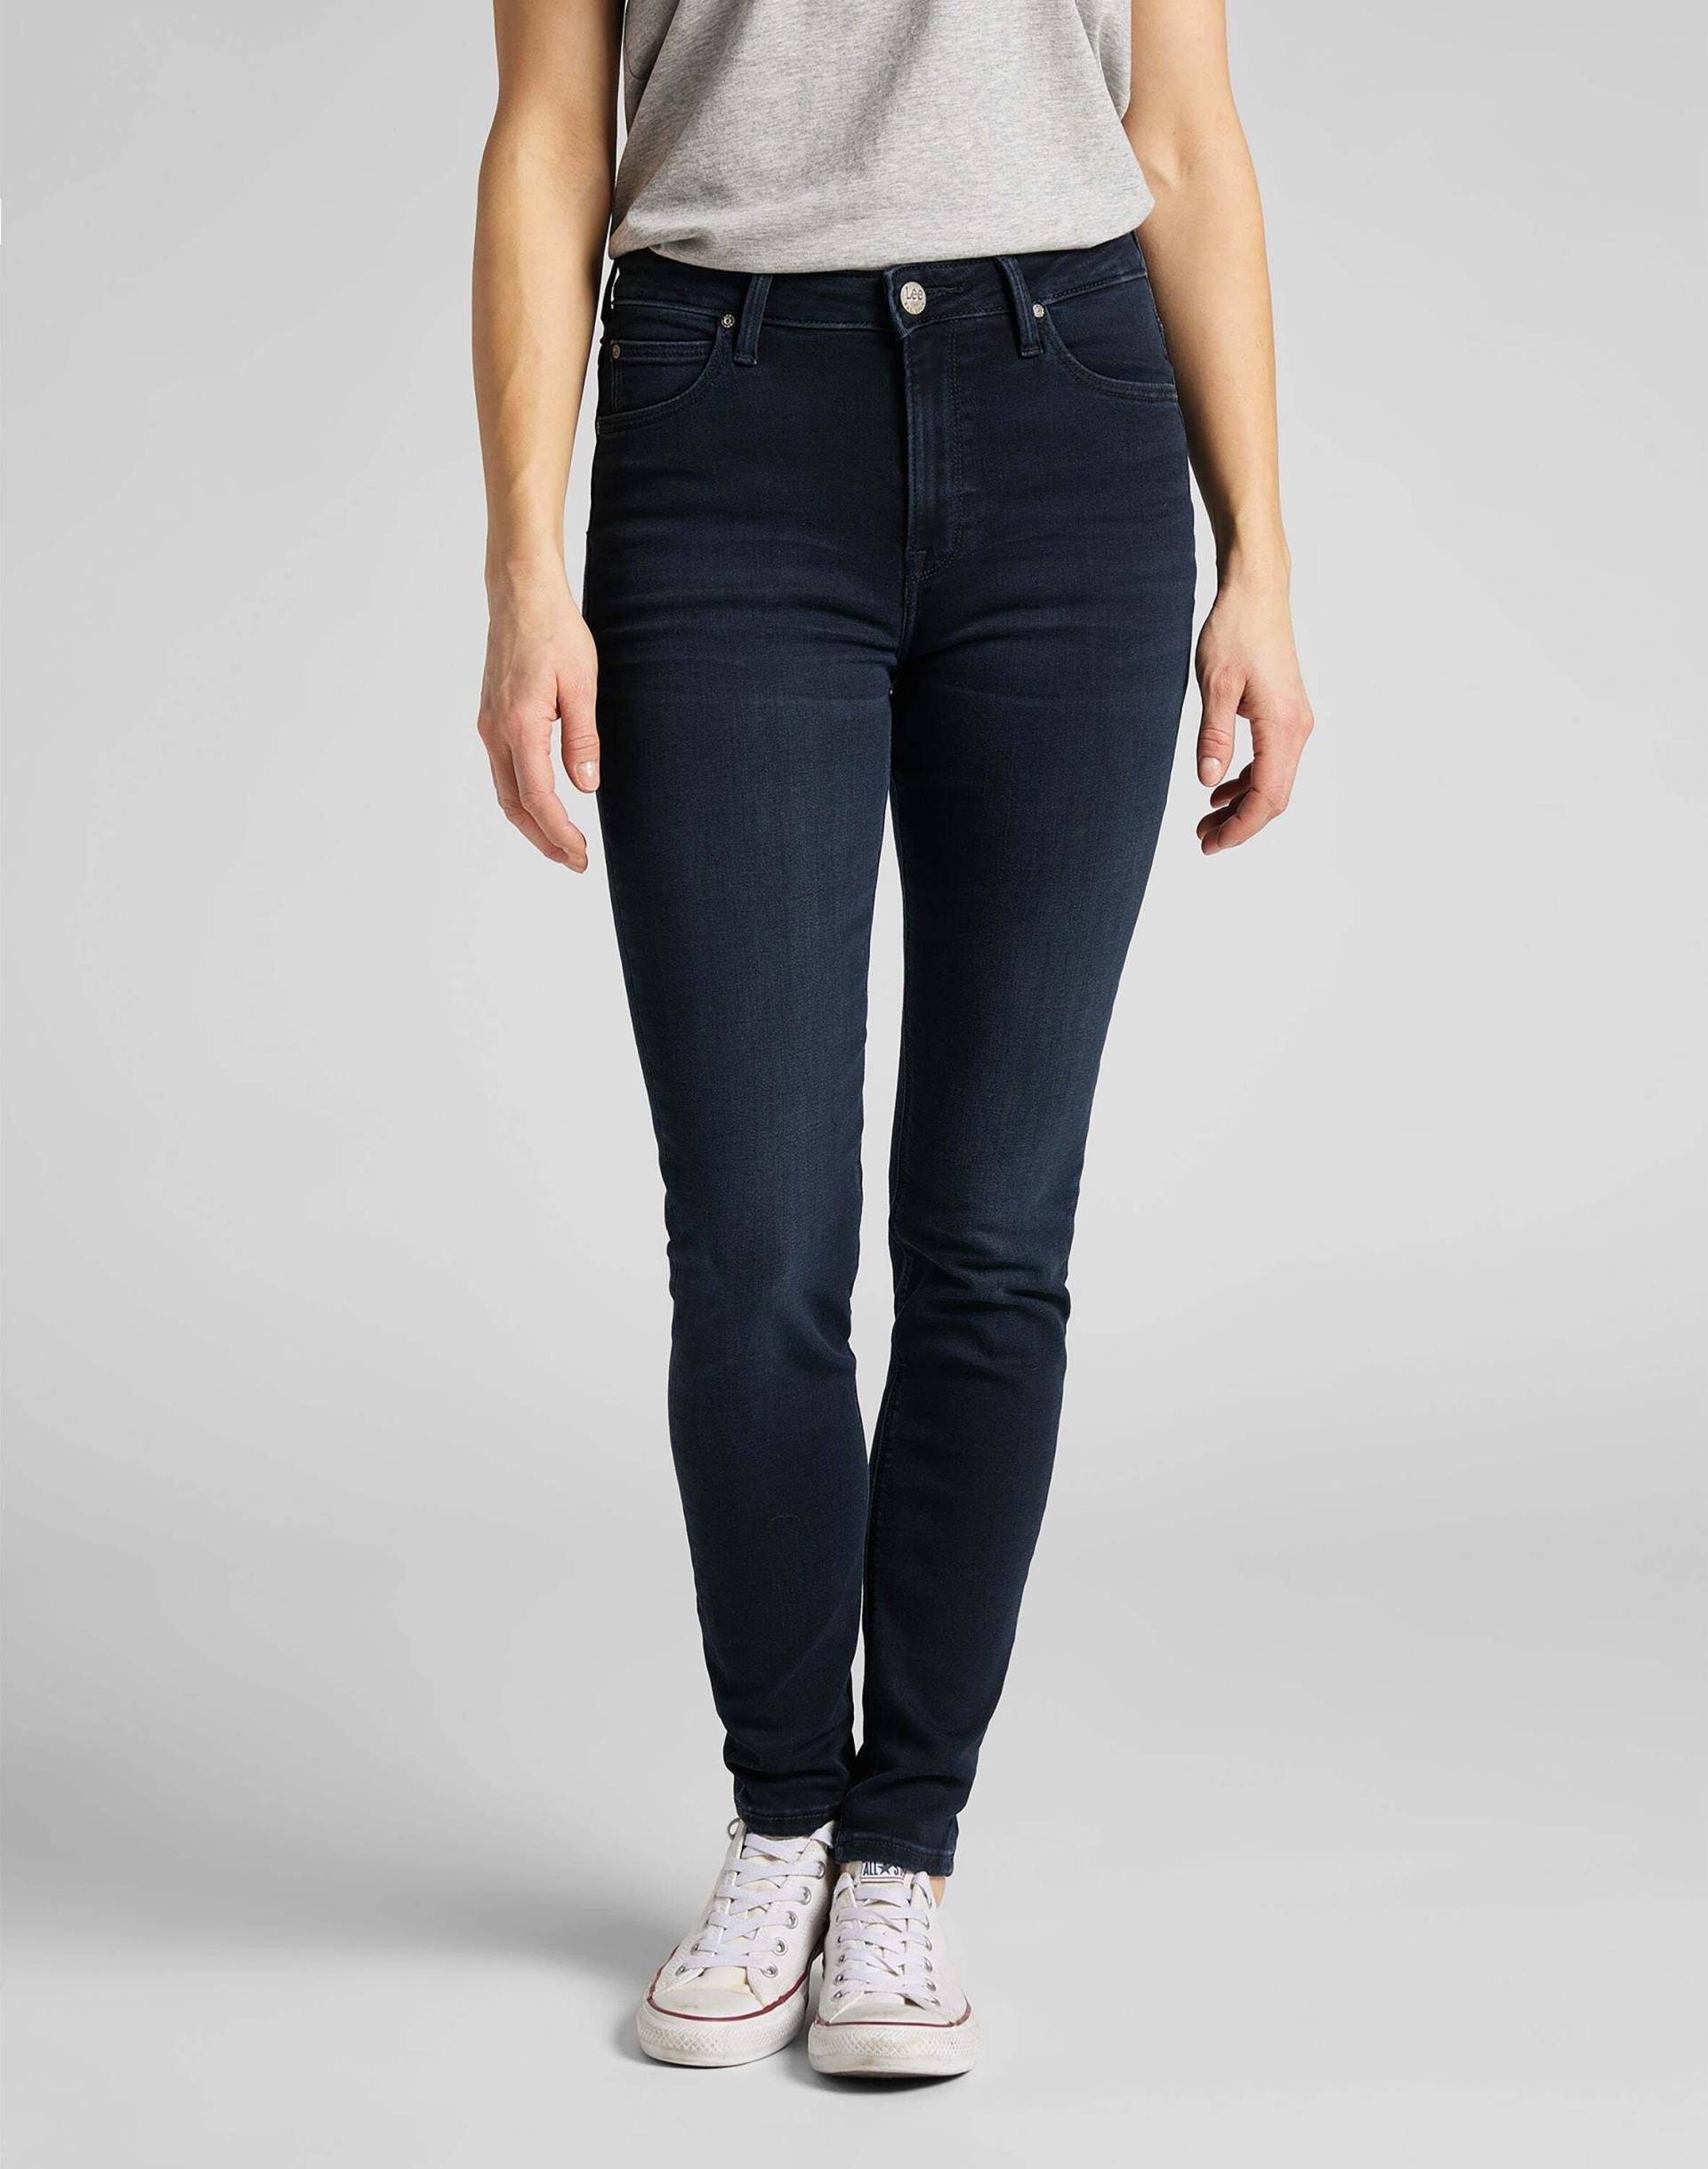 Jeans Skinny Fit Scarlett High Damen Marine L33/W31 von Lee